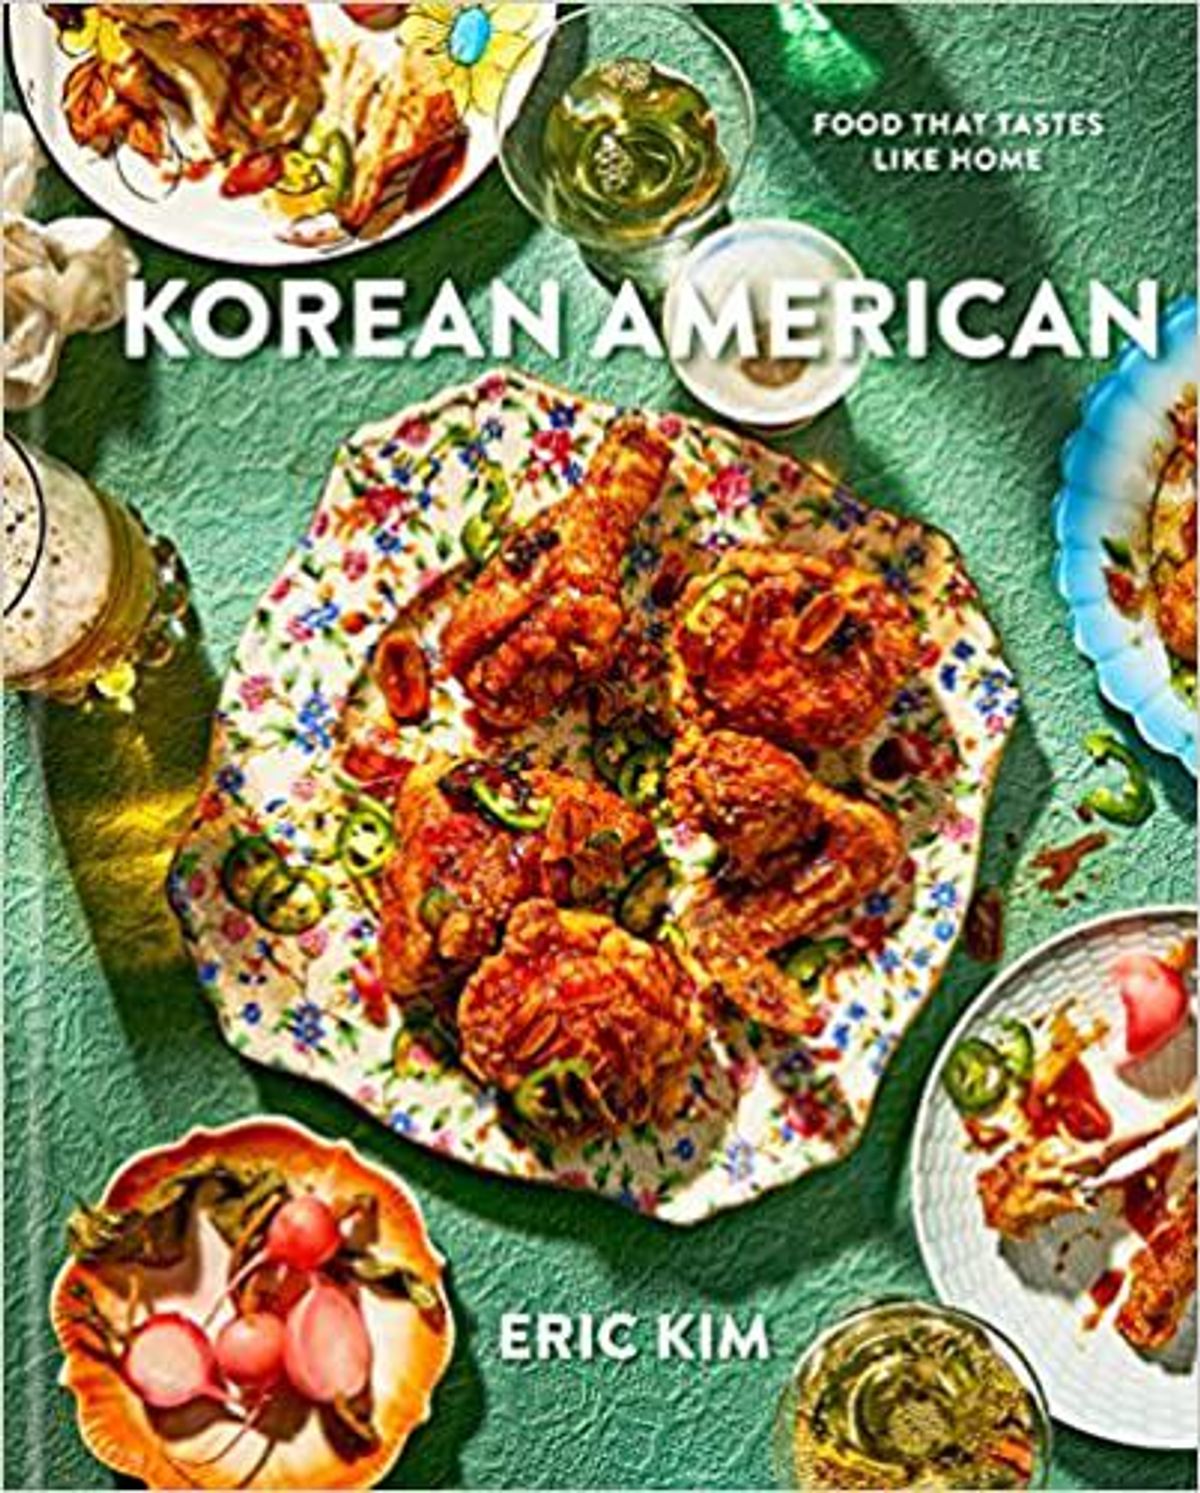 eric kim korean american cookbook